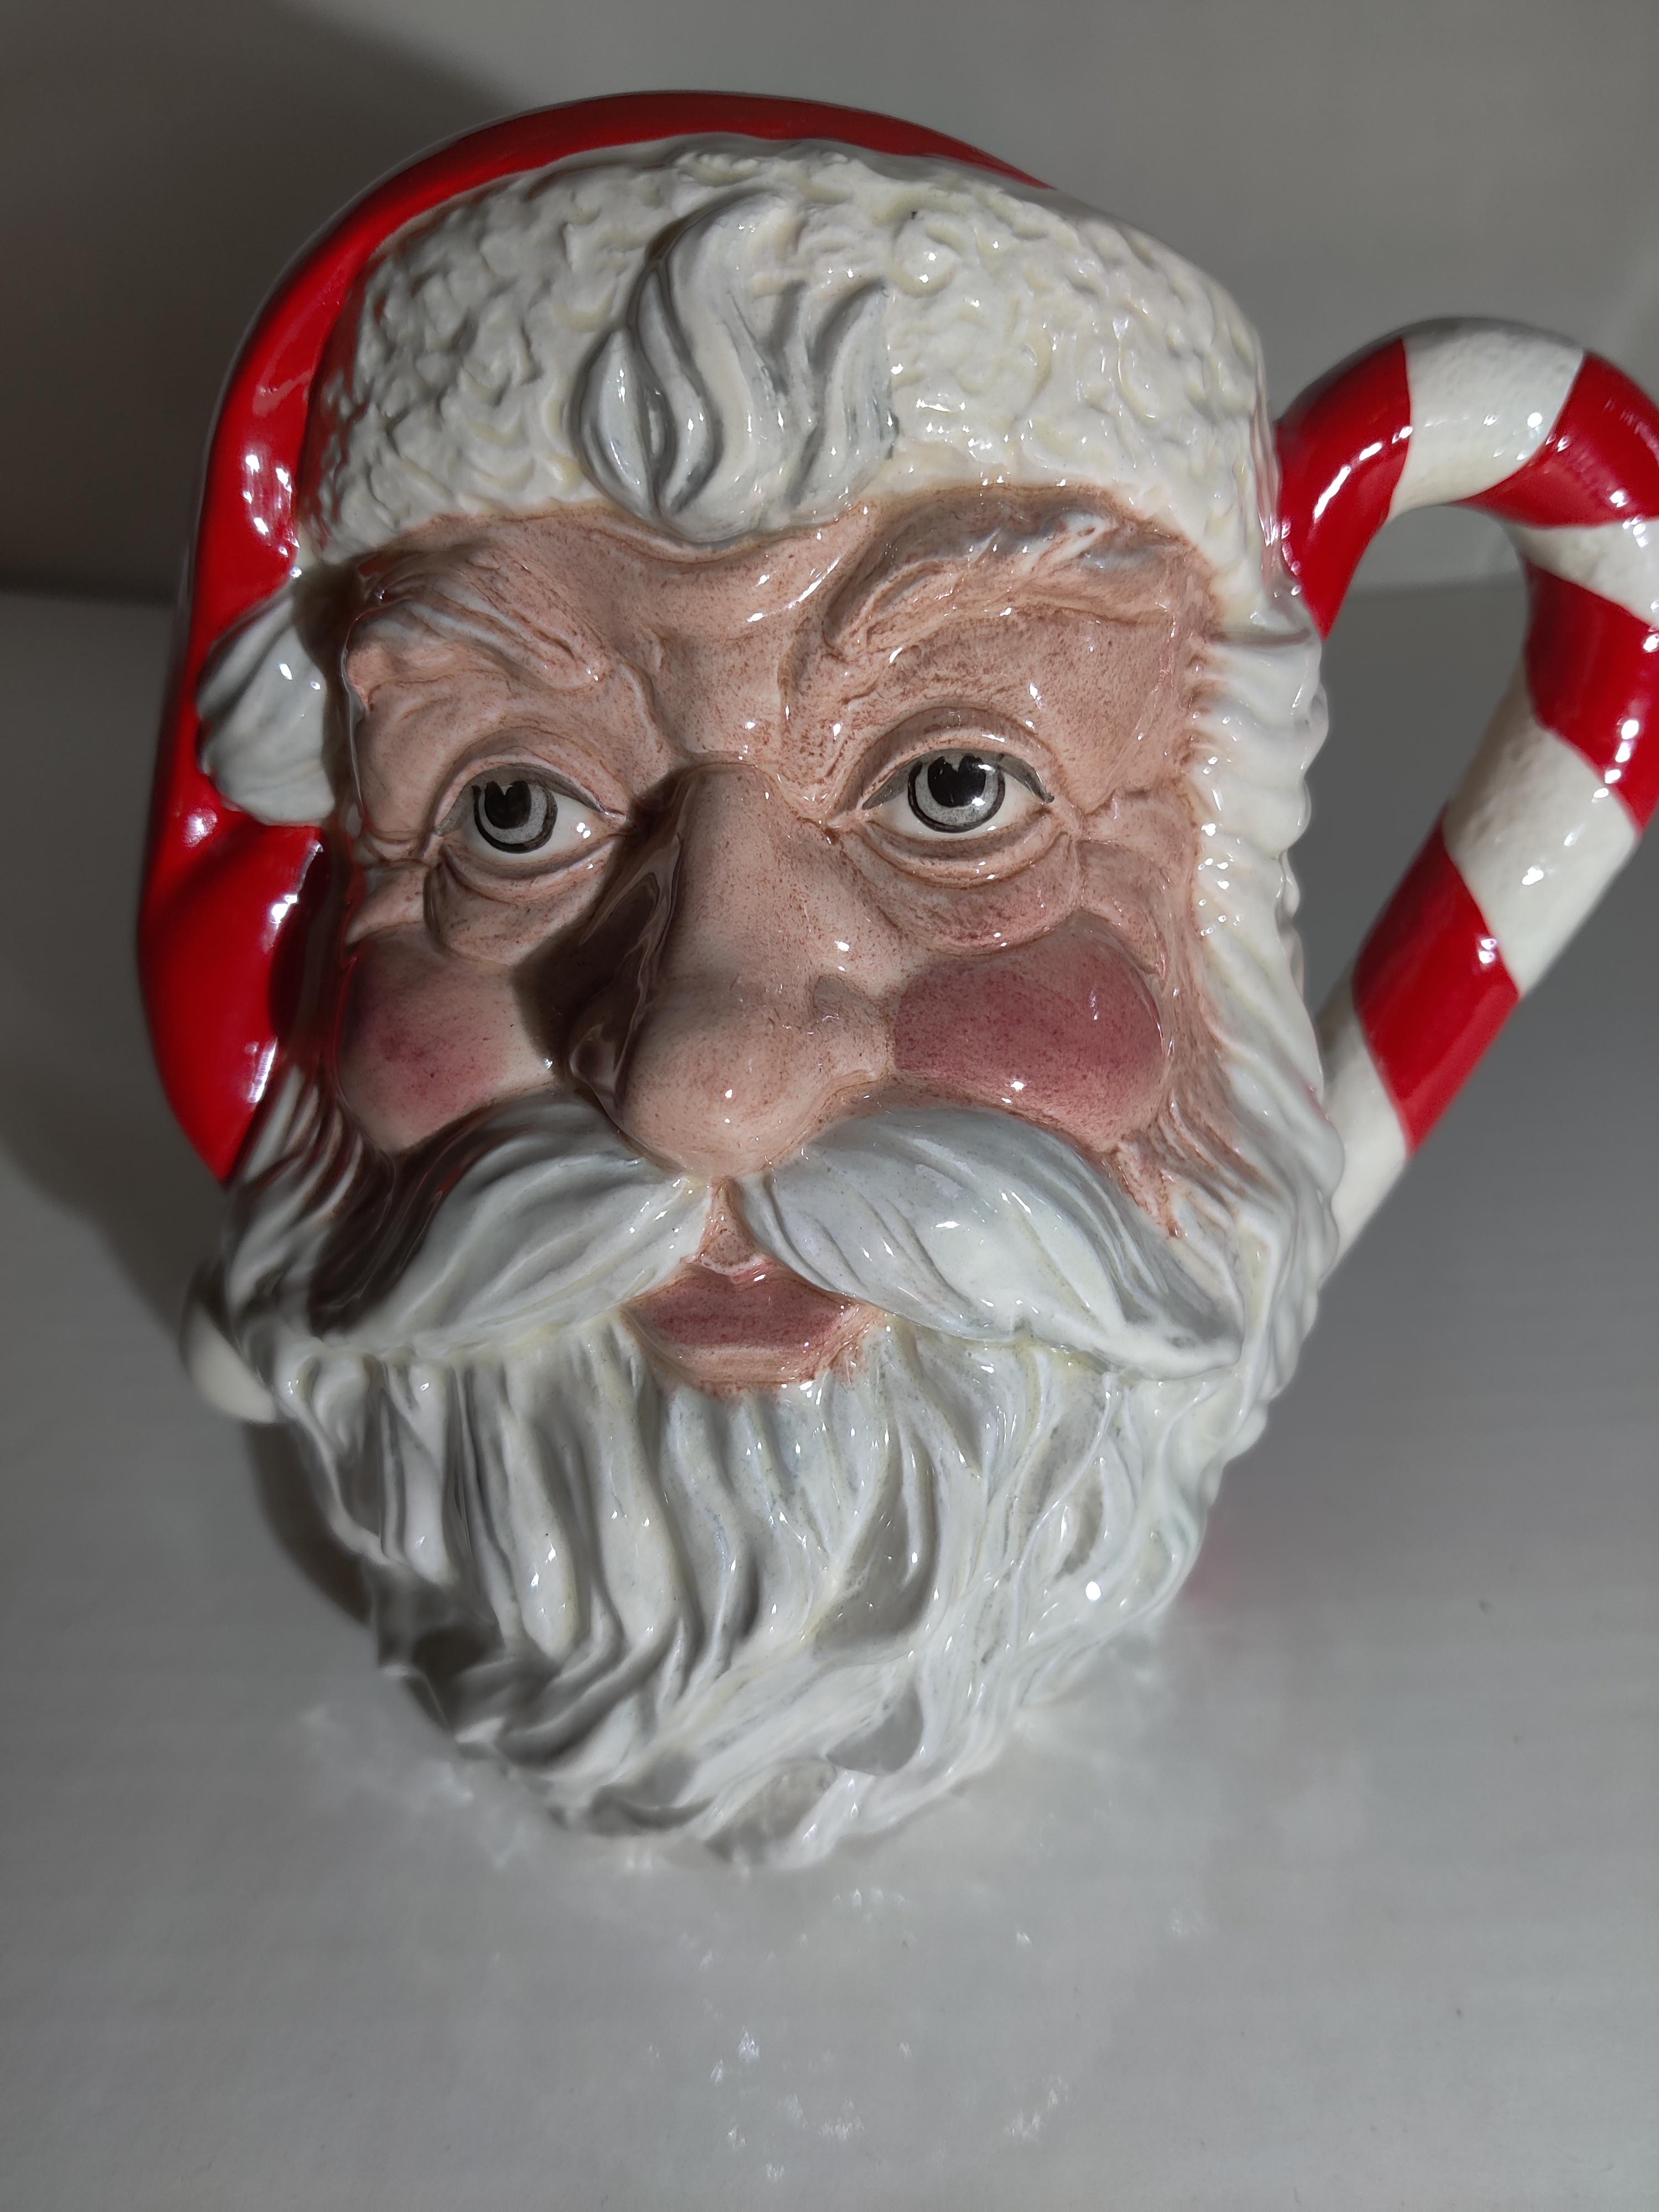 Royal D0ulton Pichet du Père Noël
D6793
Fabriqués et décorés à la main
Designer Michael Abberley
